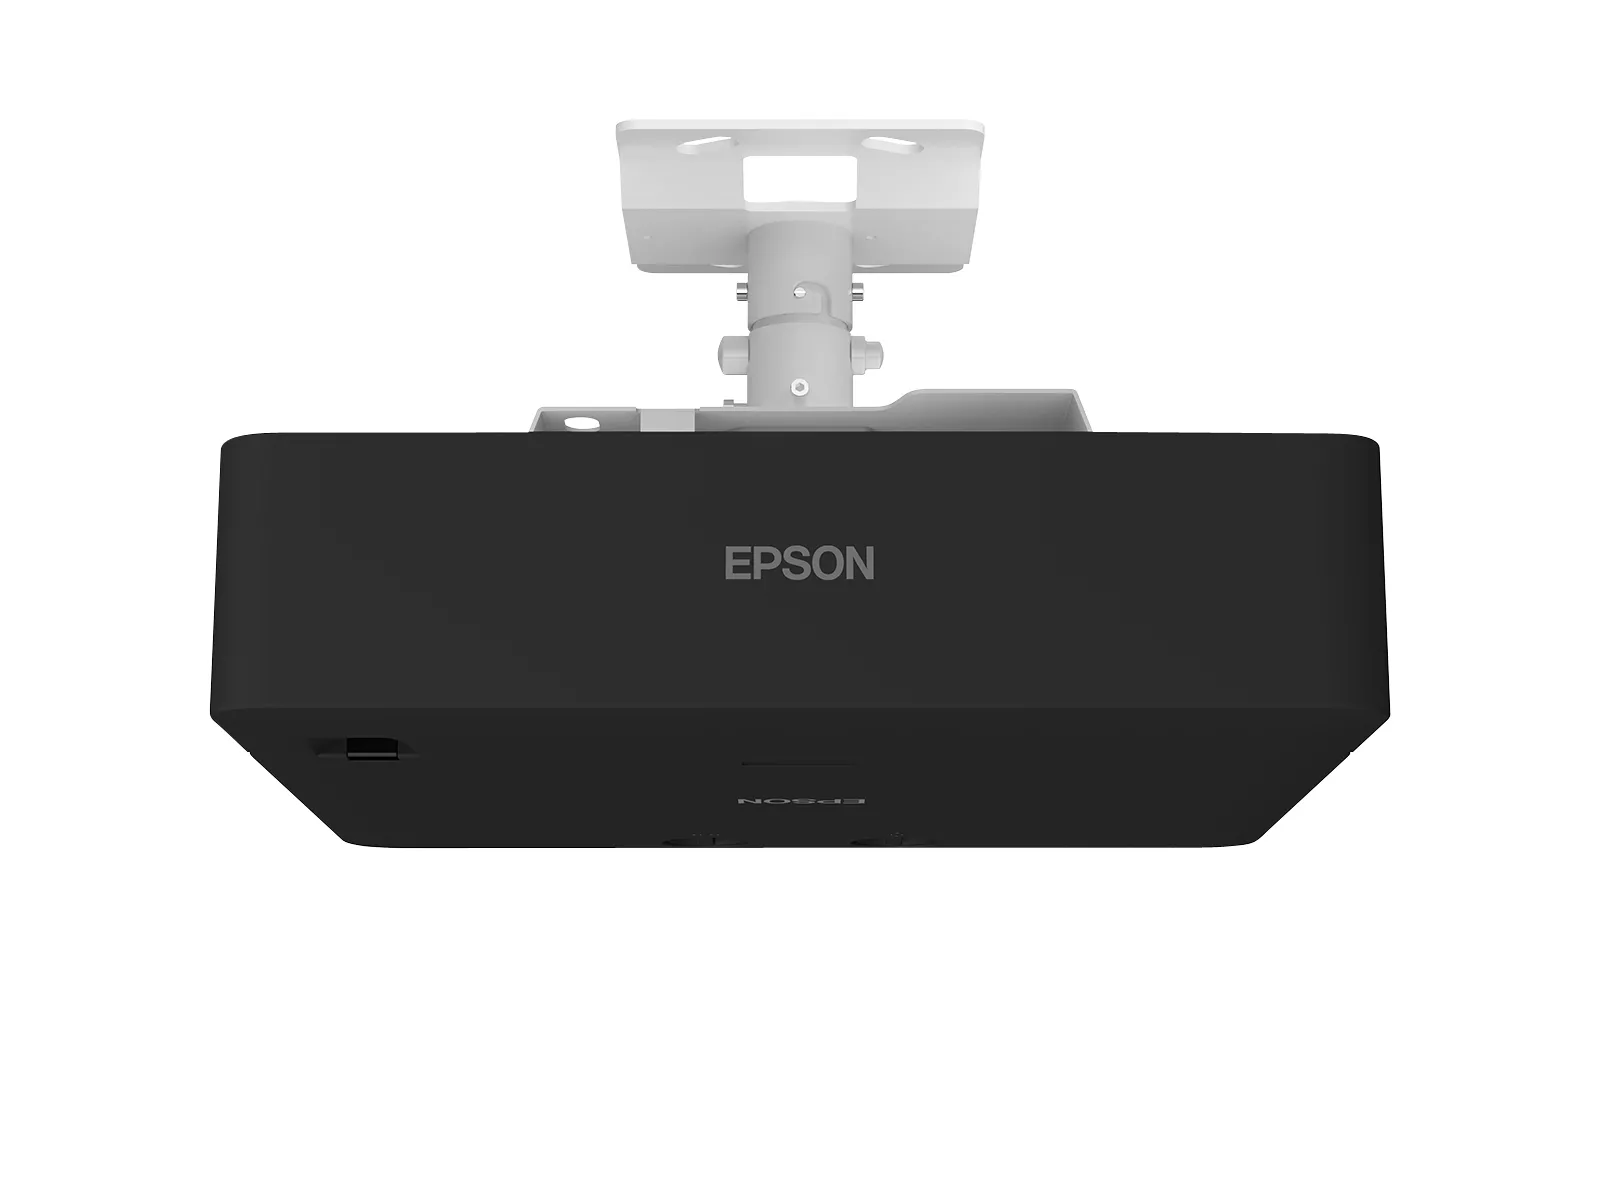 Vente EPSON EB-L775U Projector WUXGA 7000Lm projection ratio Epson au meilleur prix - visuel 8